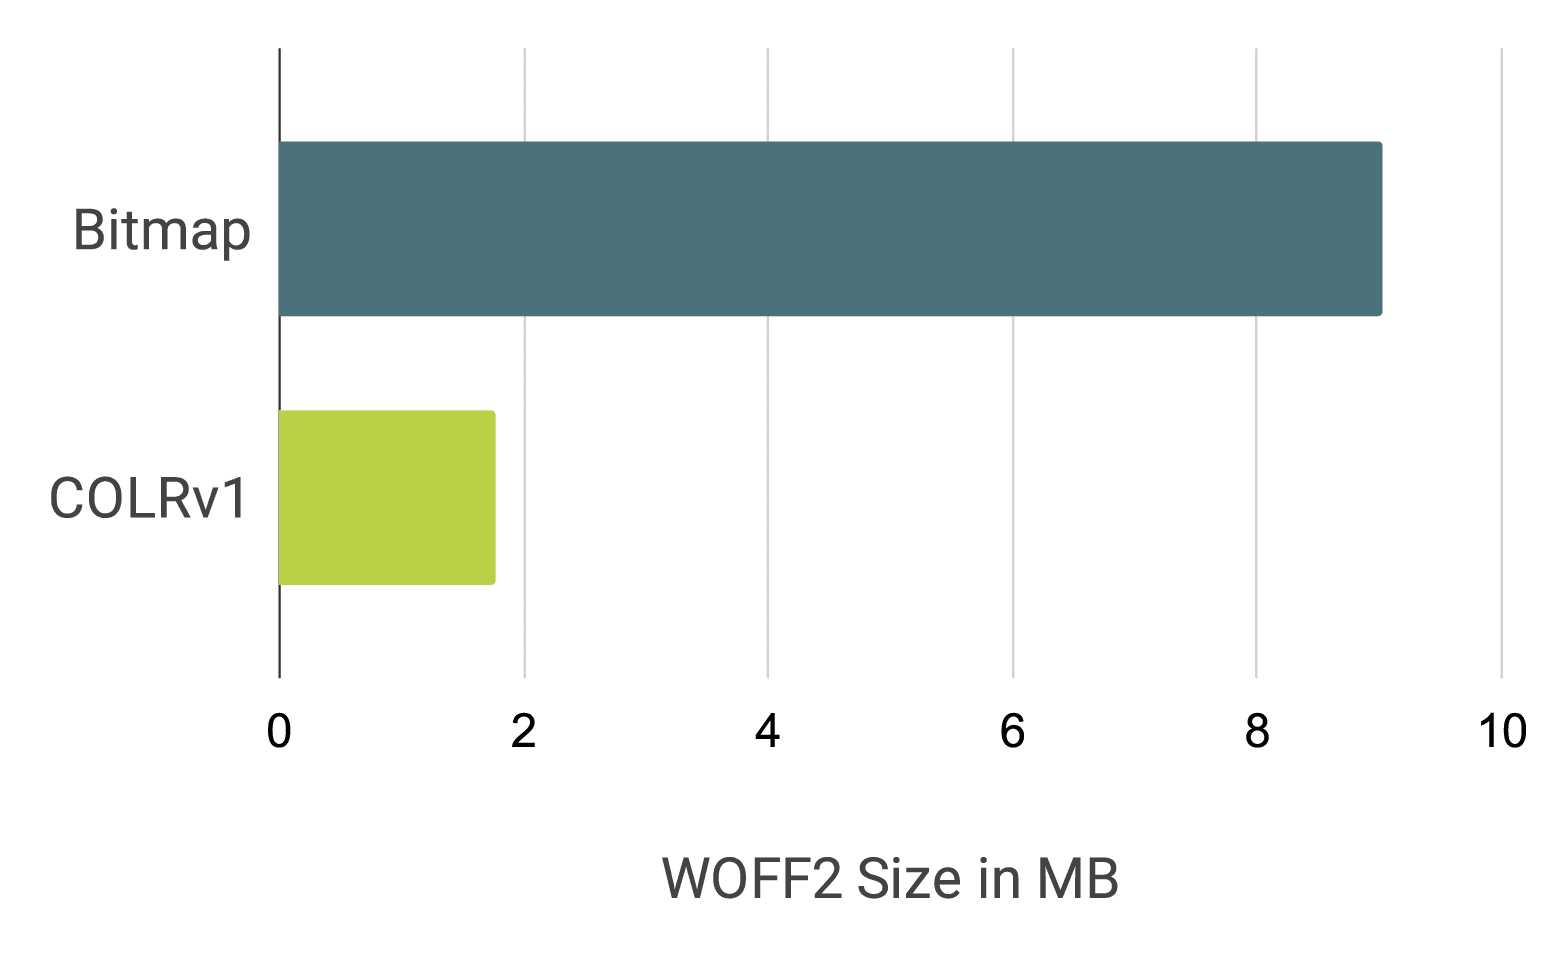 แผนภูมิแท่งเปรียบเทียบอีโมจิ Noto ในรูปแบบแบบอักษรบิตแมปและแบบอักษร COLRv1 ขนาดประมาณ 9 MB
เทียบกับ 1.85 MB